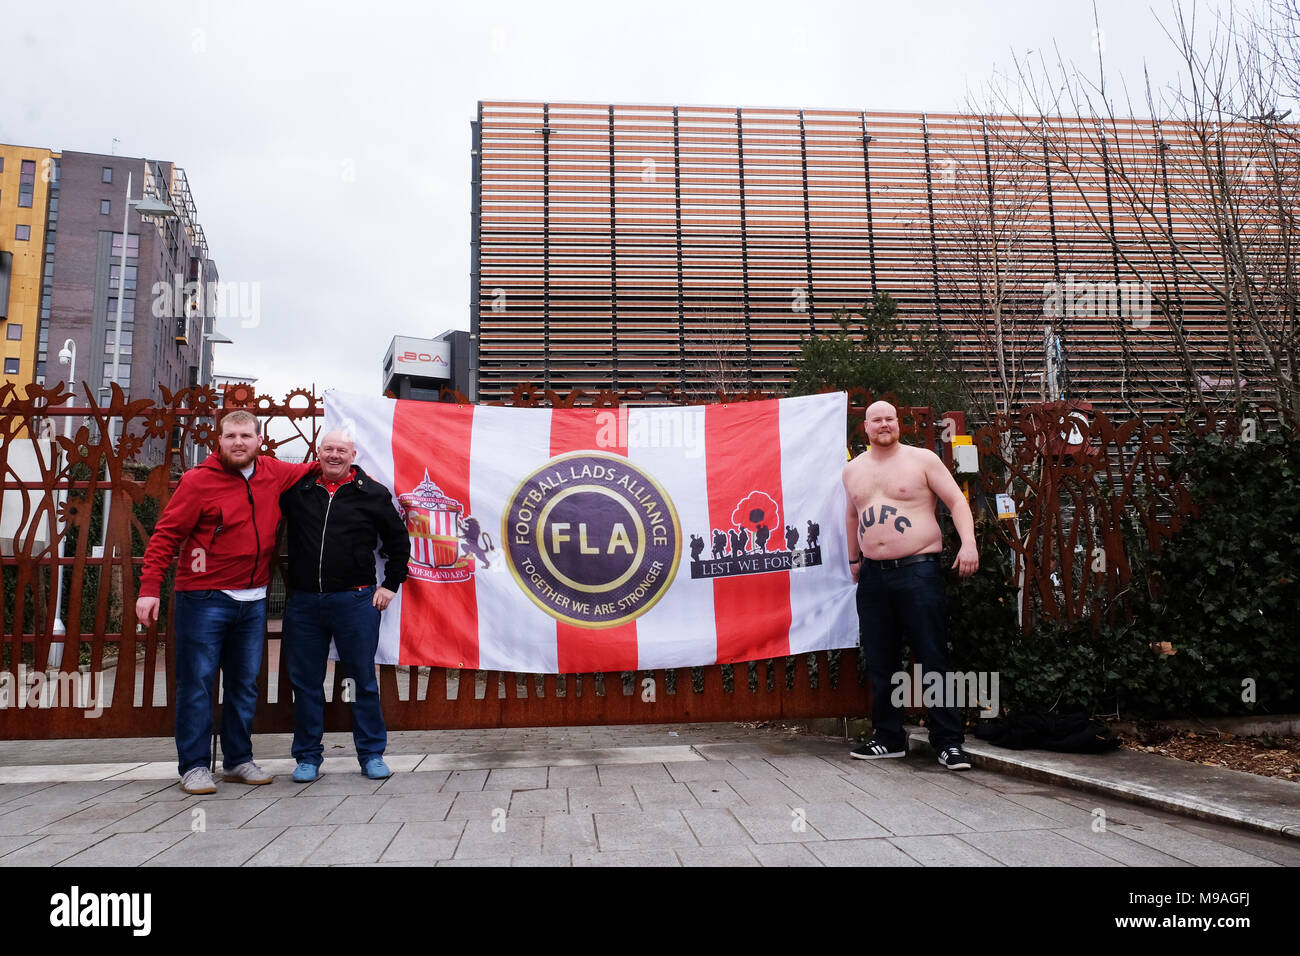 Birmingham, UK - Am Samstag, den 24. März 2018 - Demonstration und März von der Fußball-Jungs Alliance (FLA) in Birmingham. Foto Steven Mai/Alamy leben Nachrichten Stockfoto